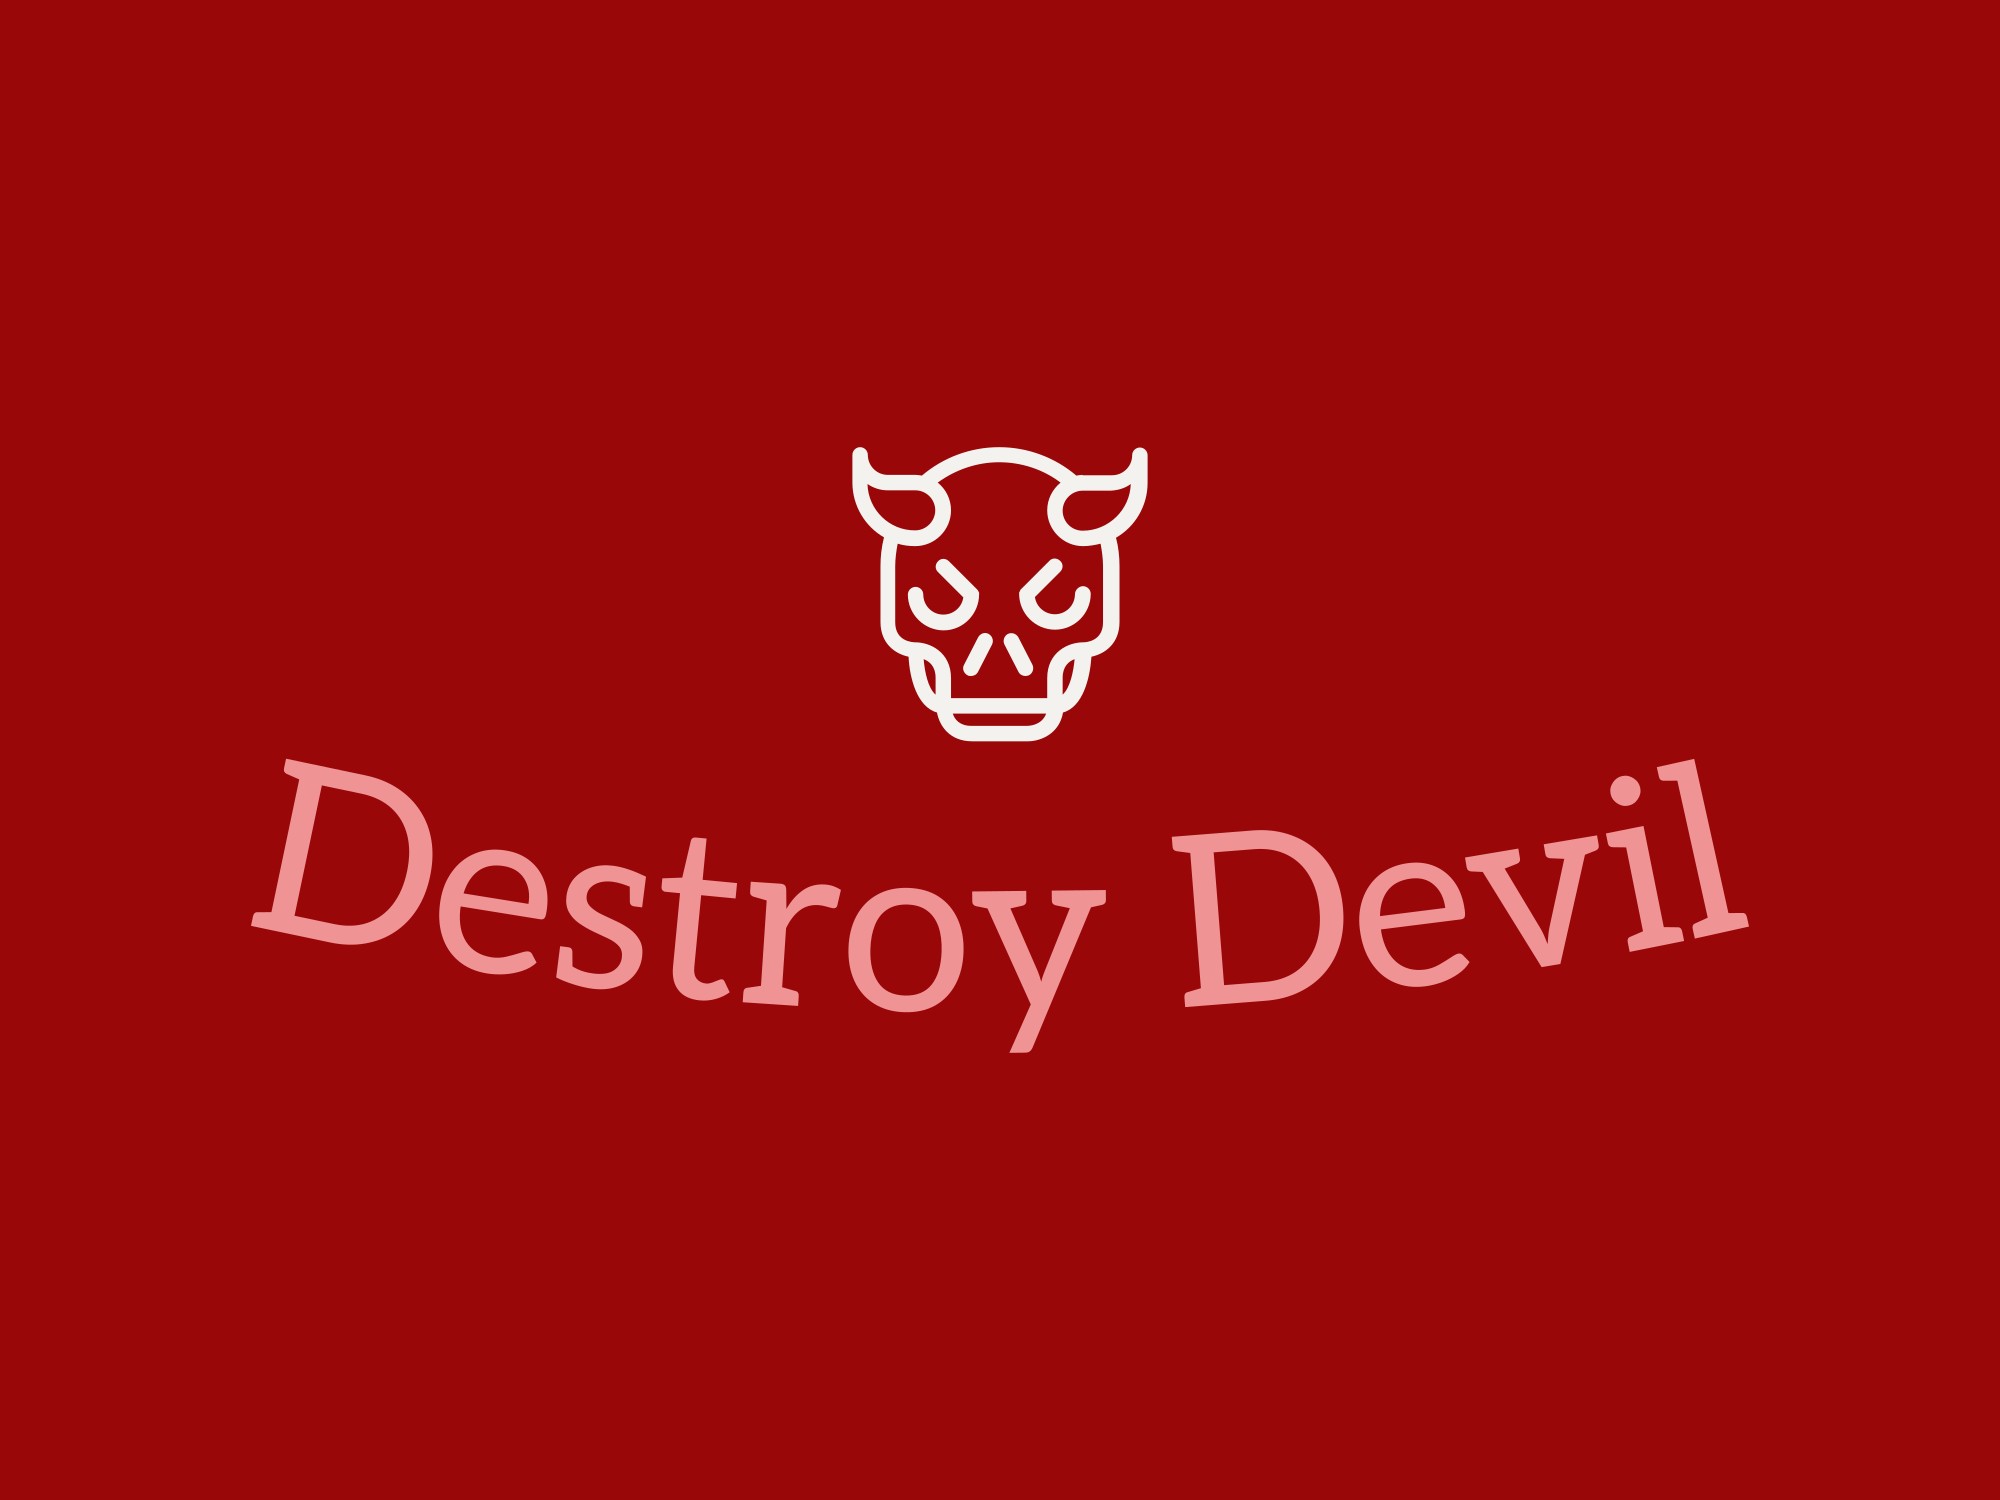 Destroy Devil